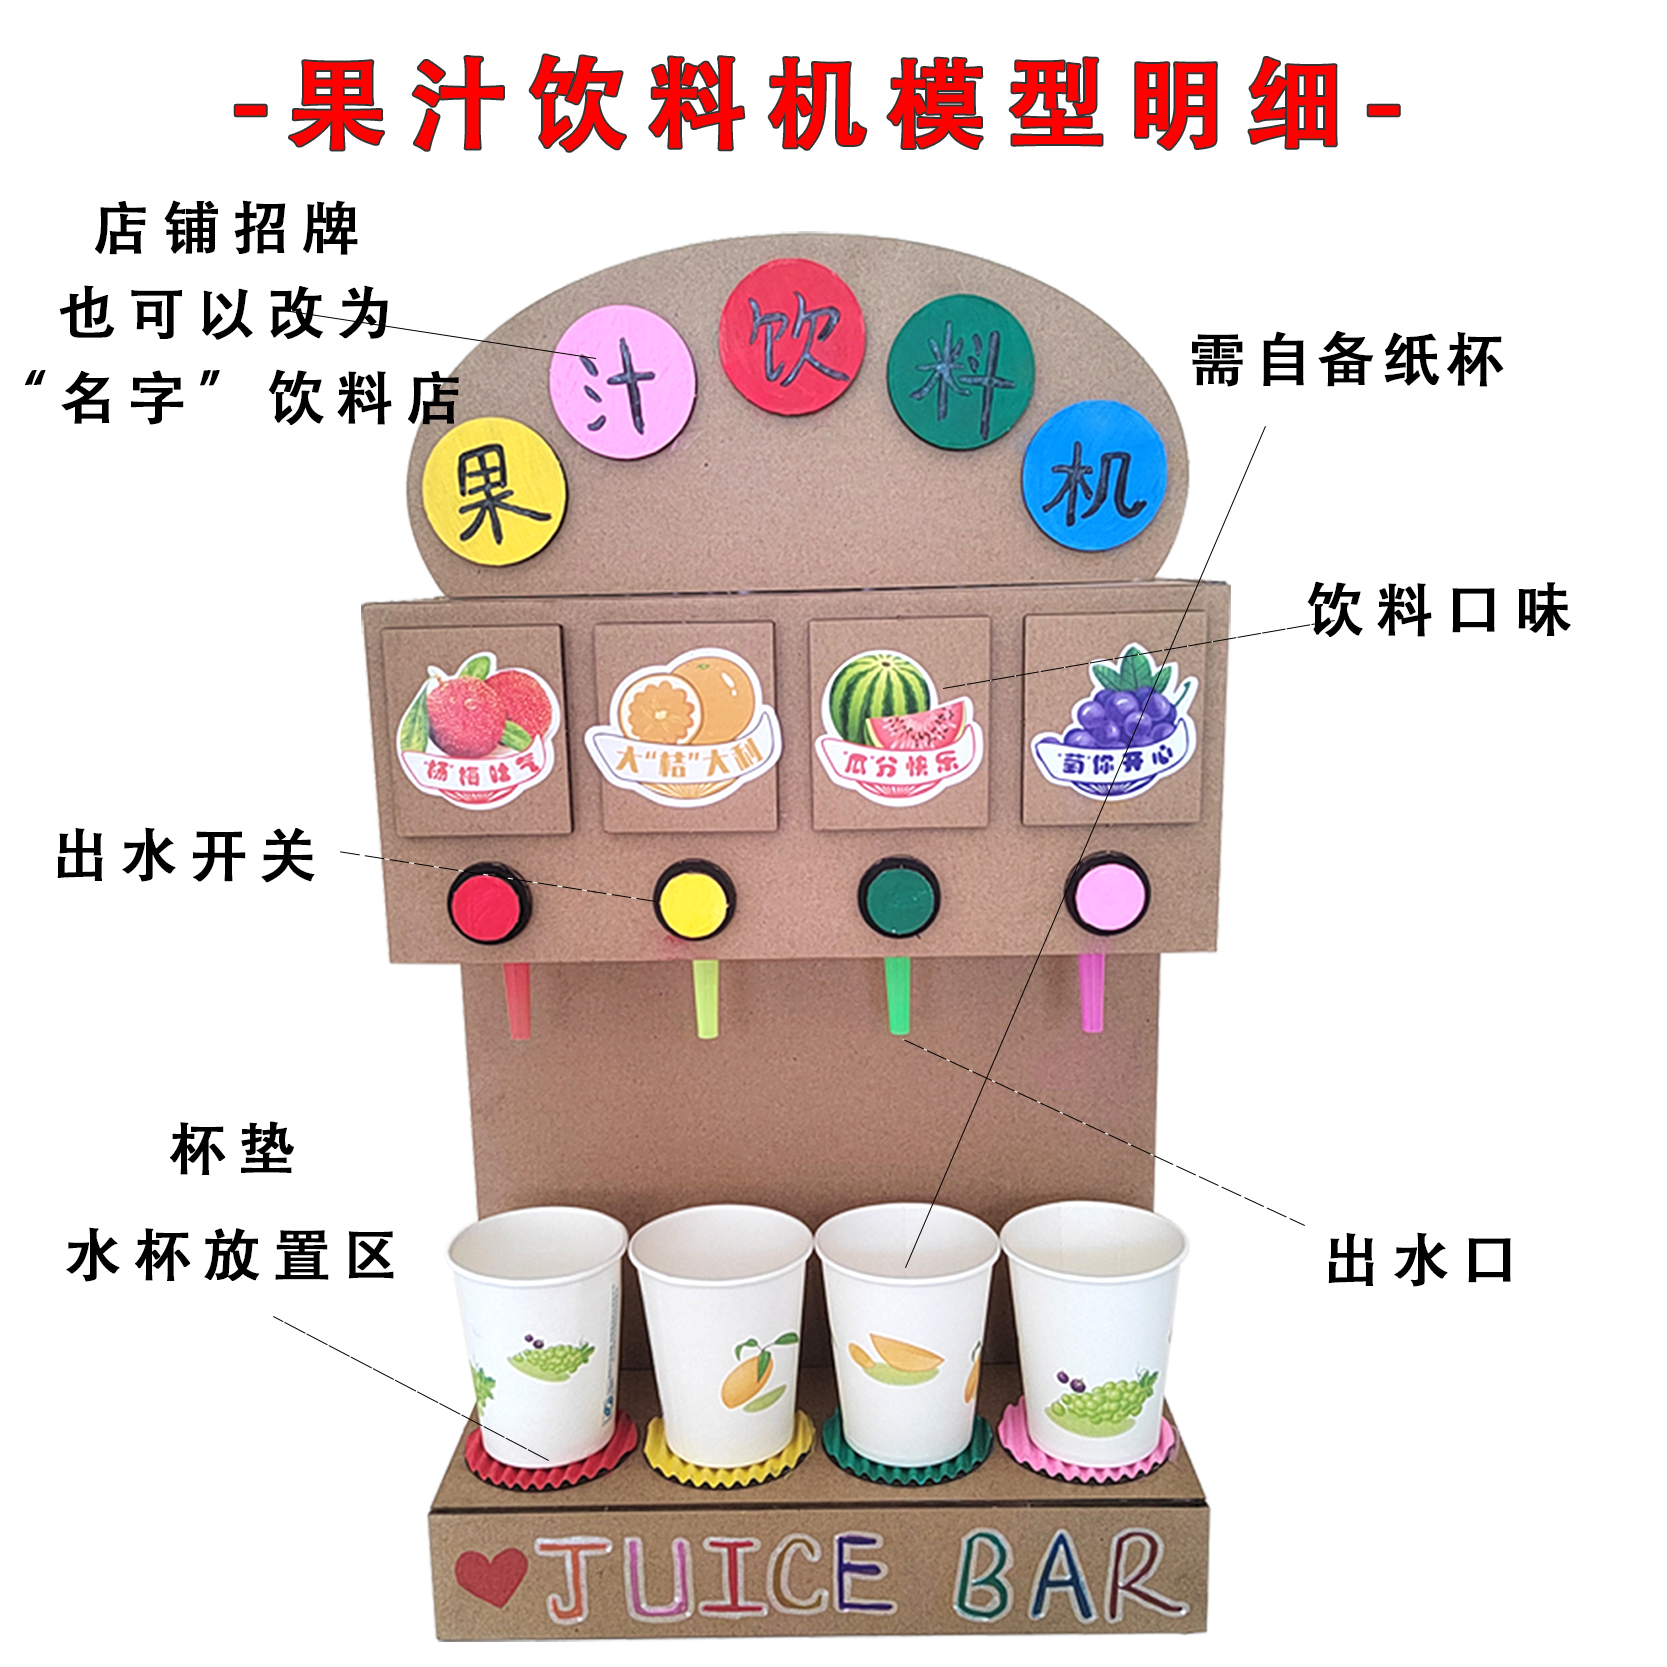 娃娃家自制果汁饮料机模型 幼儿园女孩diy手工纸板环保饮水机玩具 - 图1